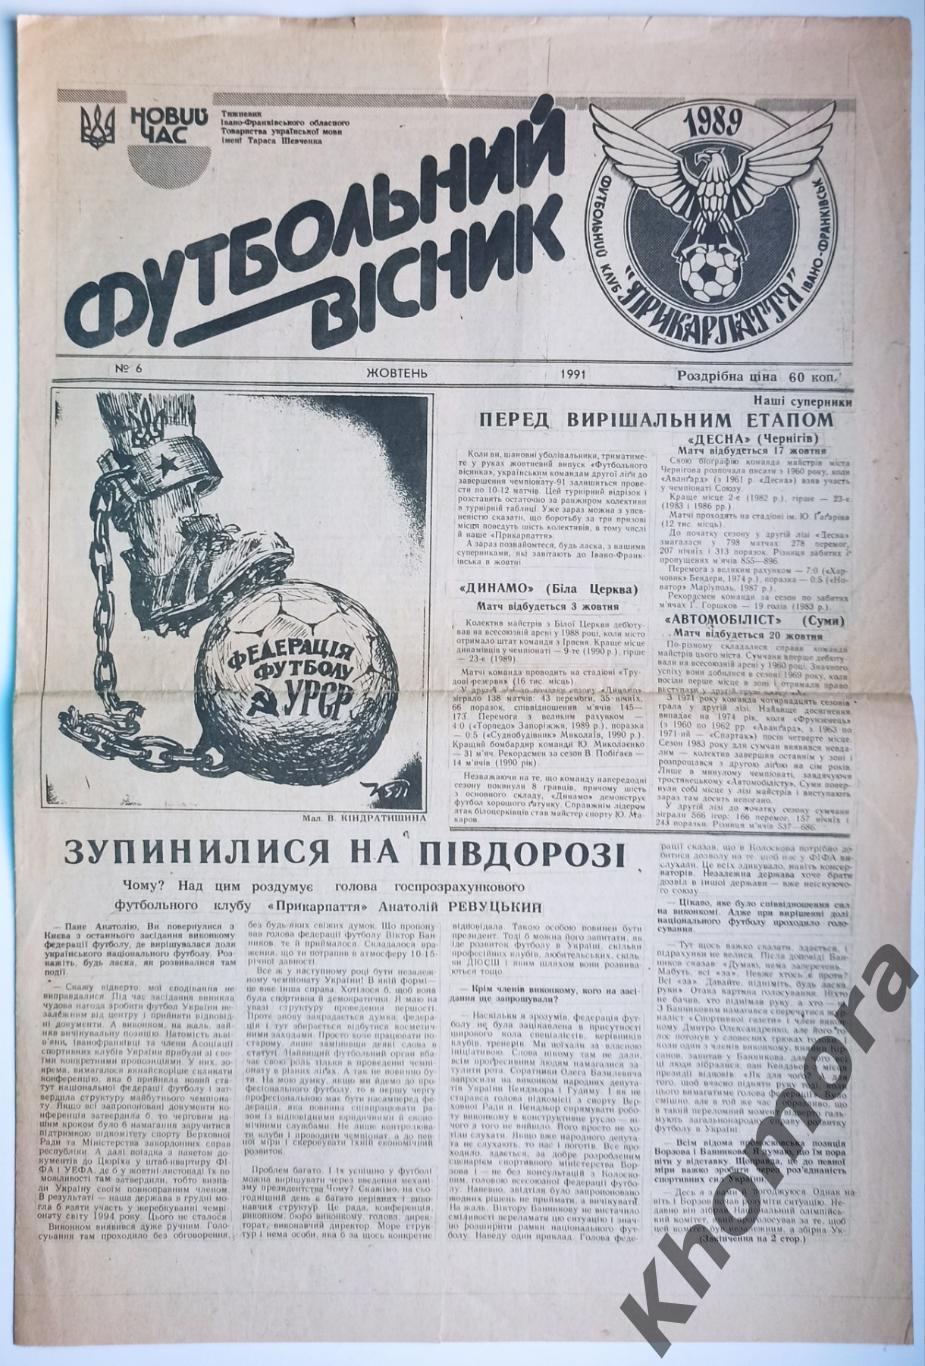 Прикарпатье (Ивано-Франковск) - Динамо (Белая Церковь) 1991 - спецвыпуск газеты